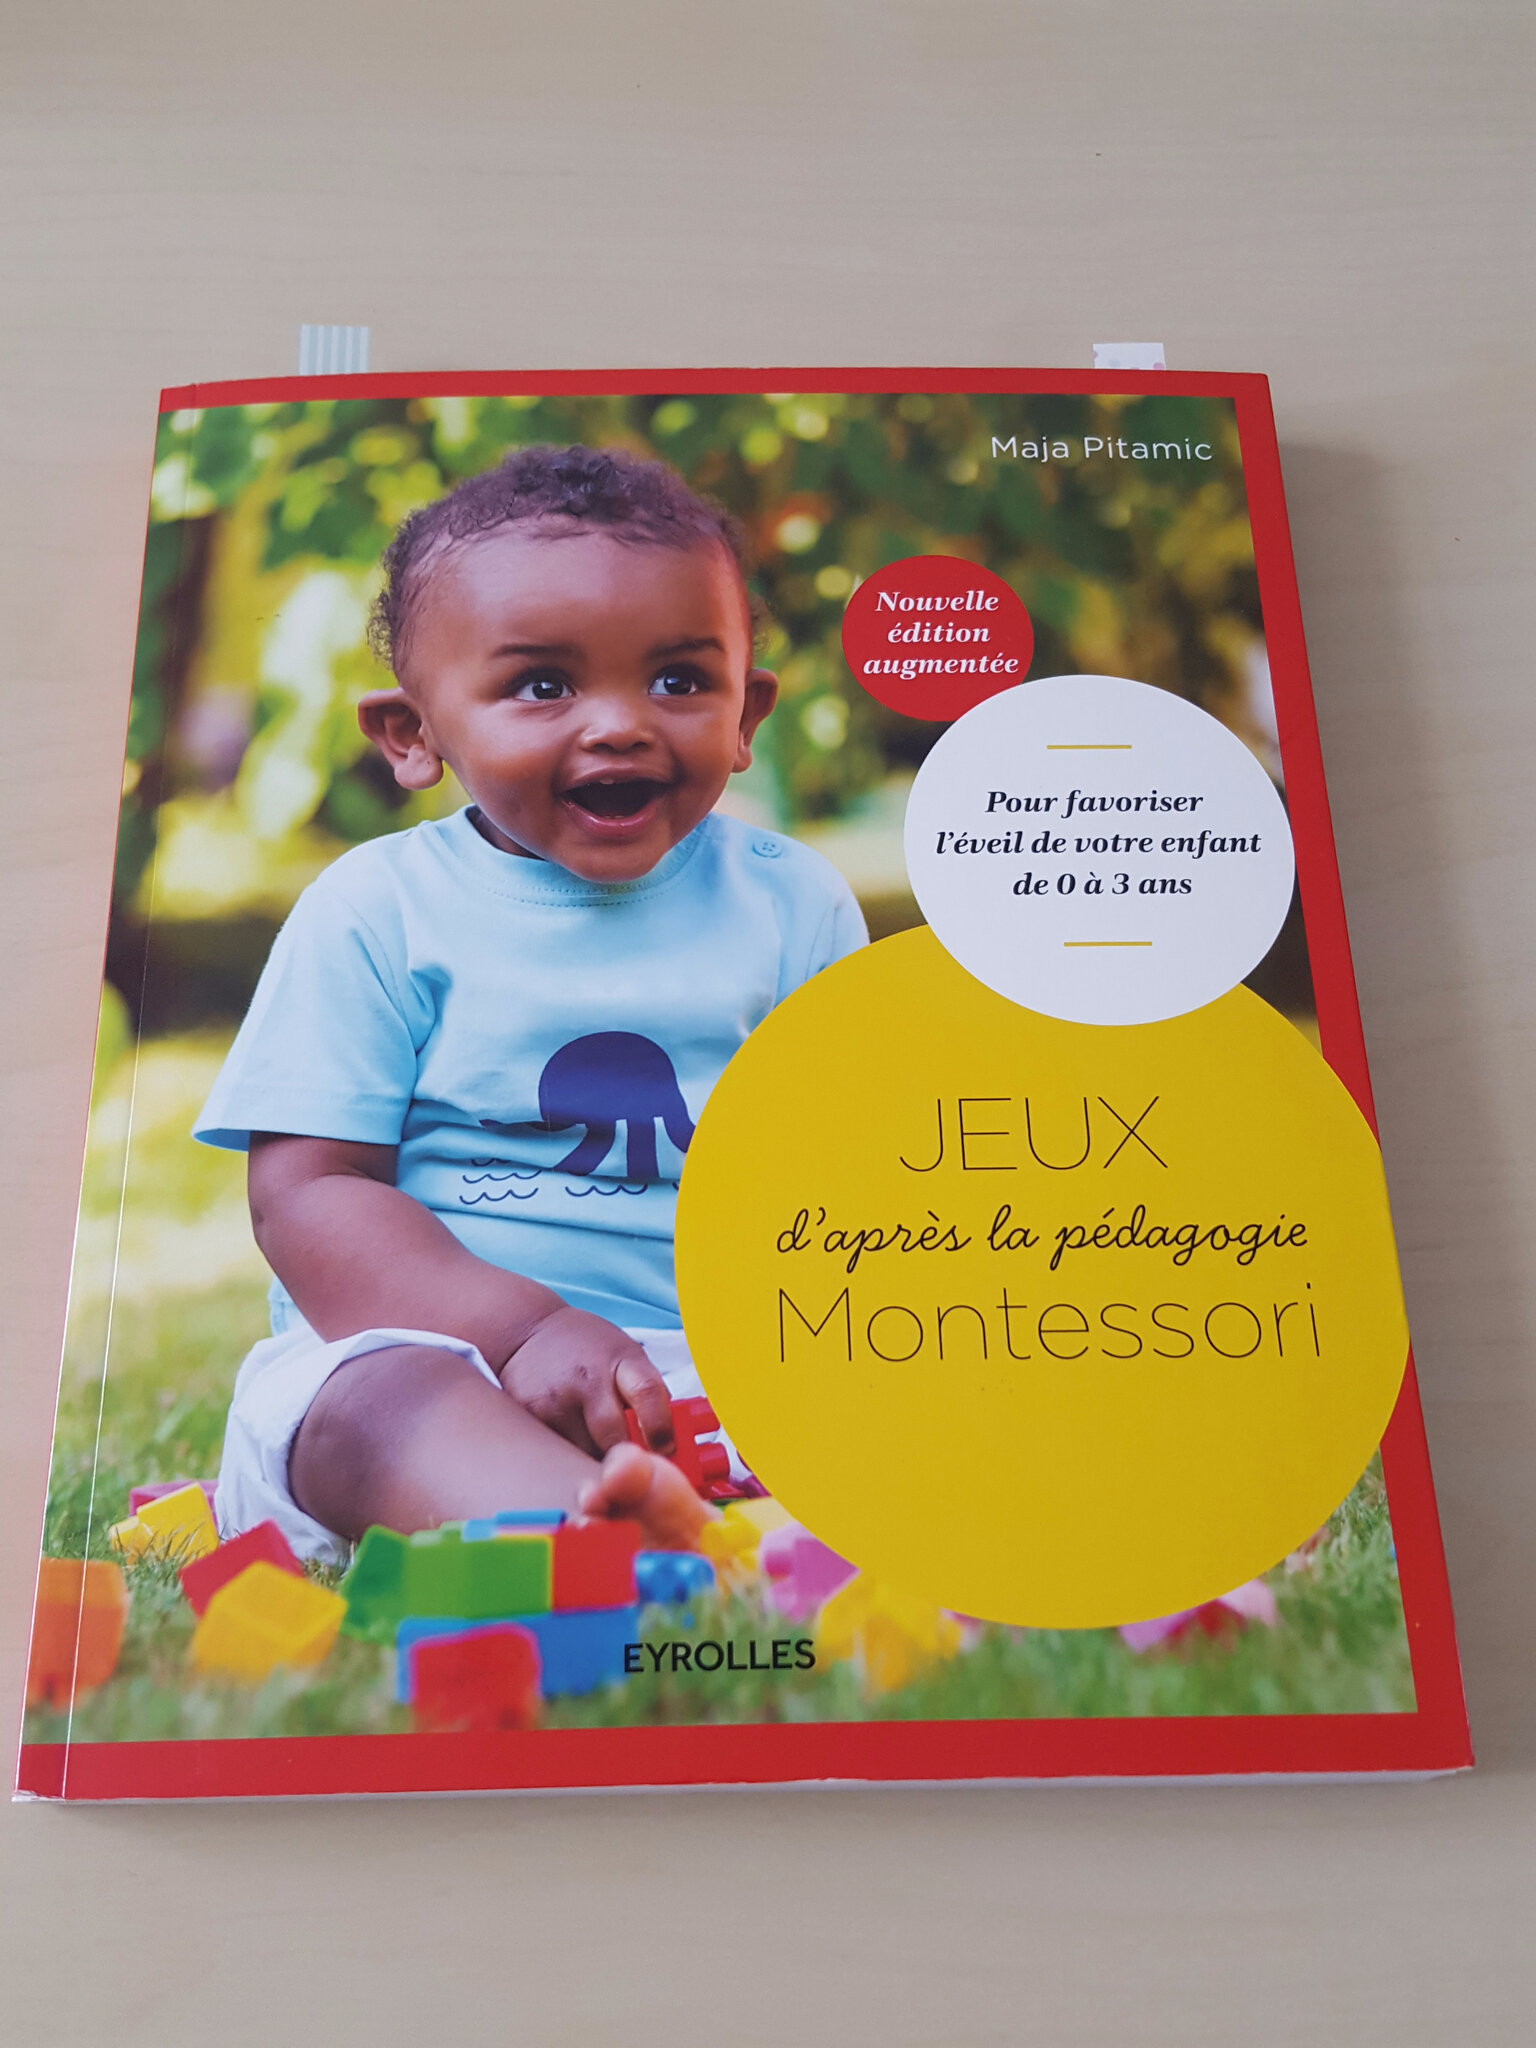 Livre Montessori: notre sélection pour comprendre la méthode – L